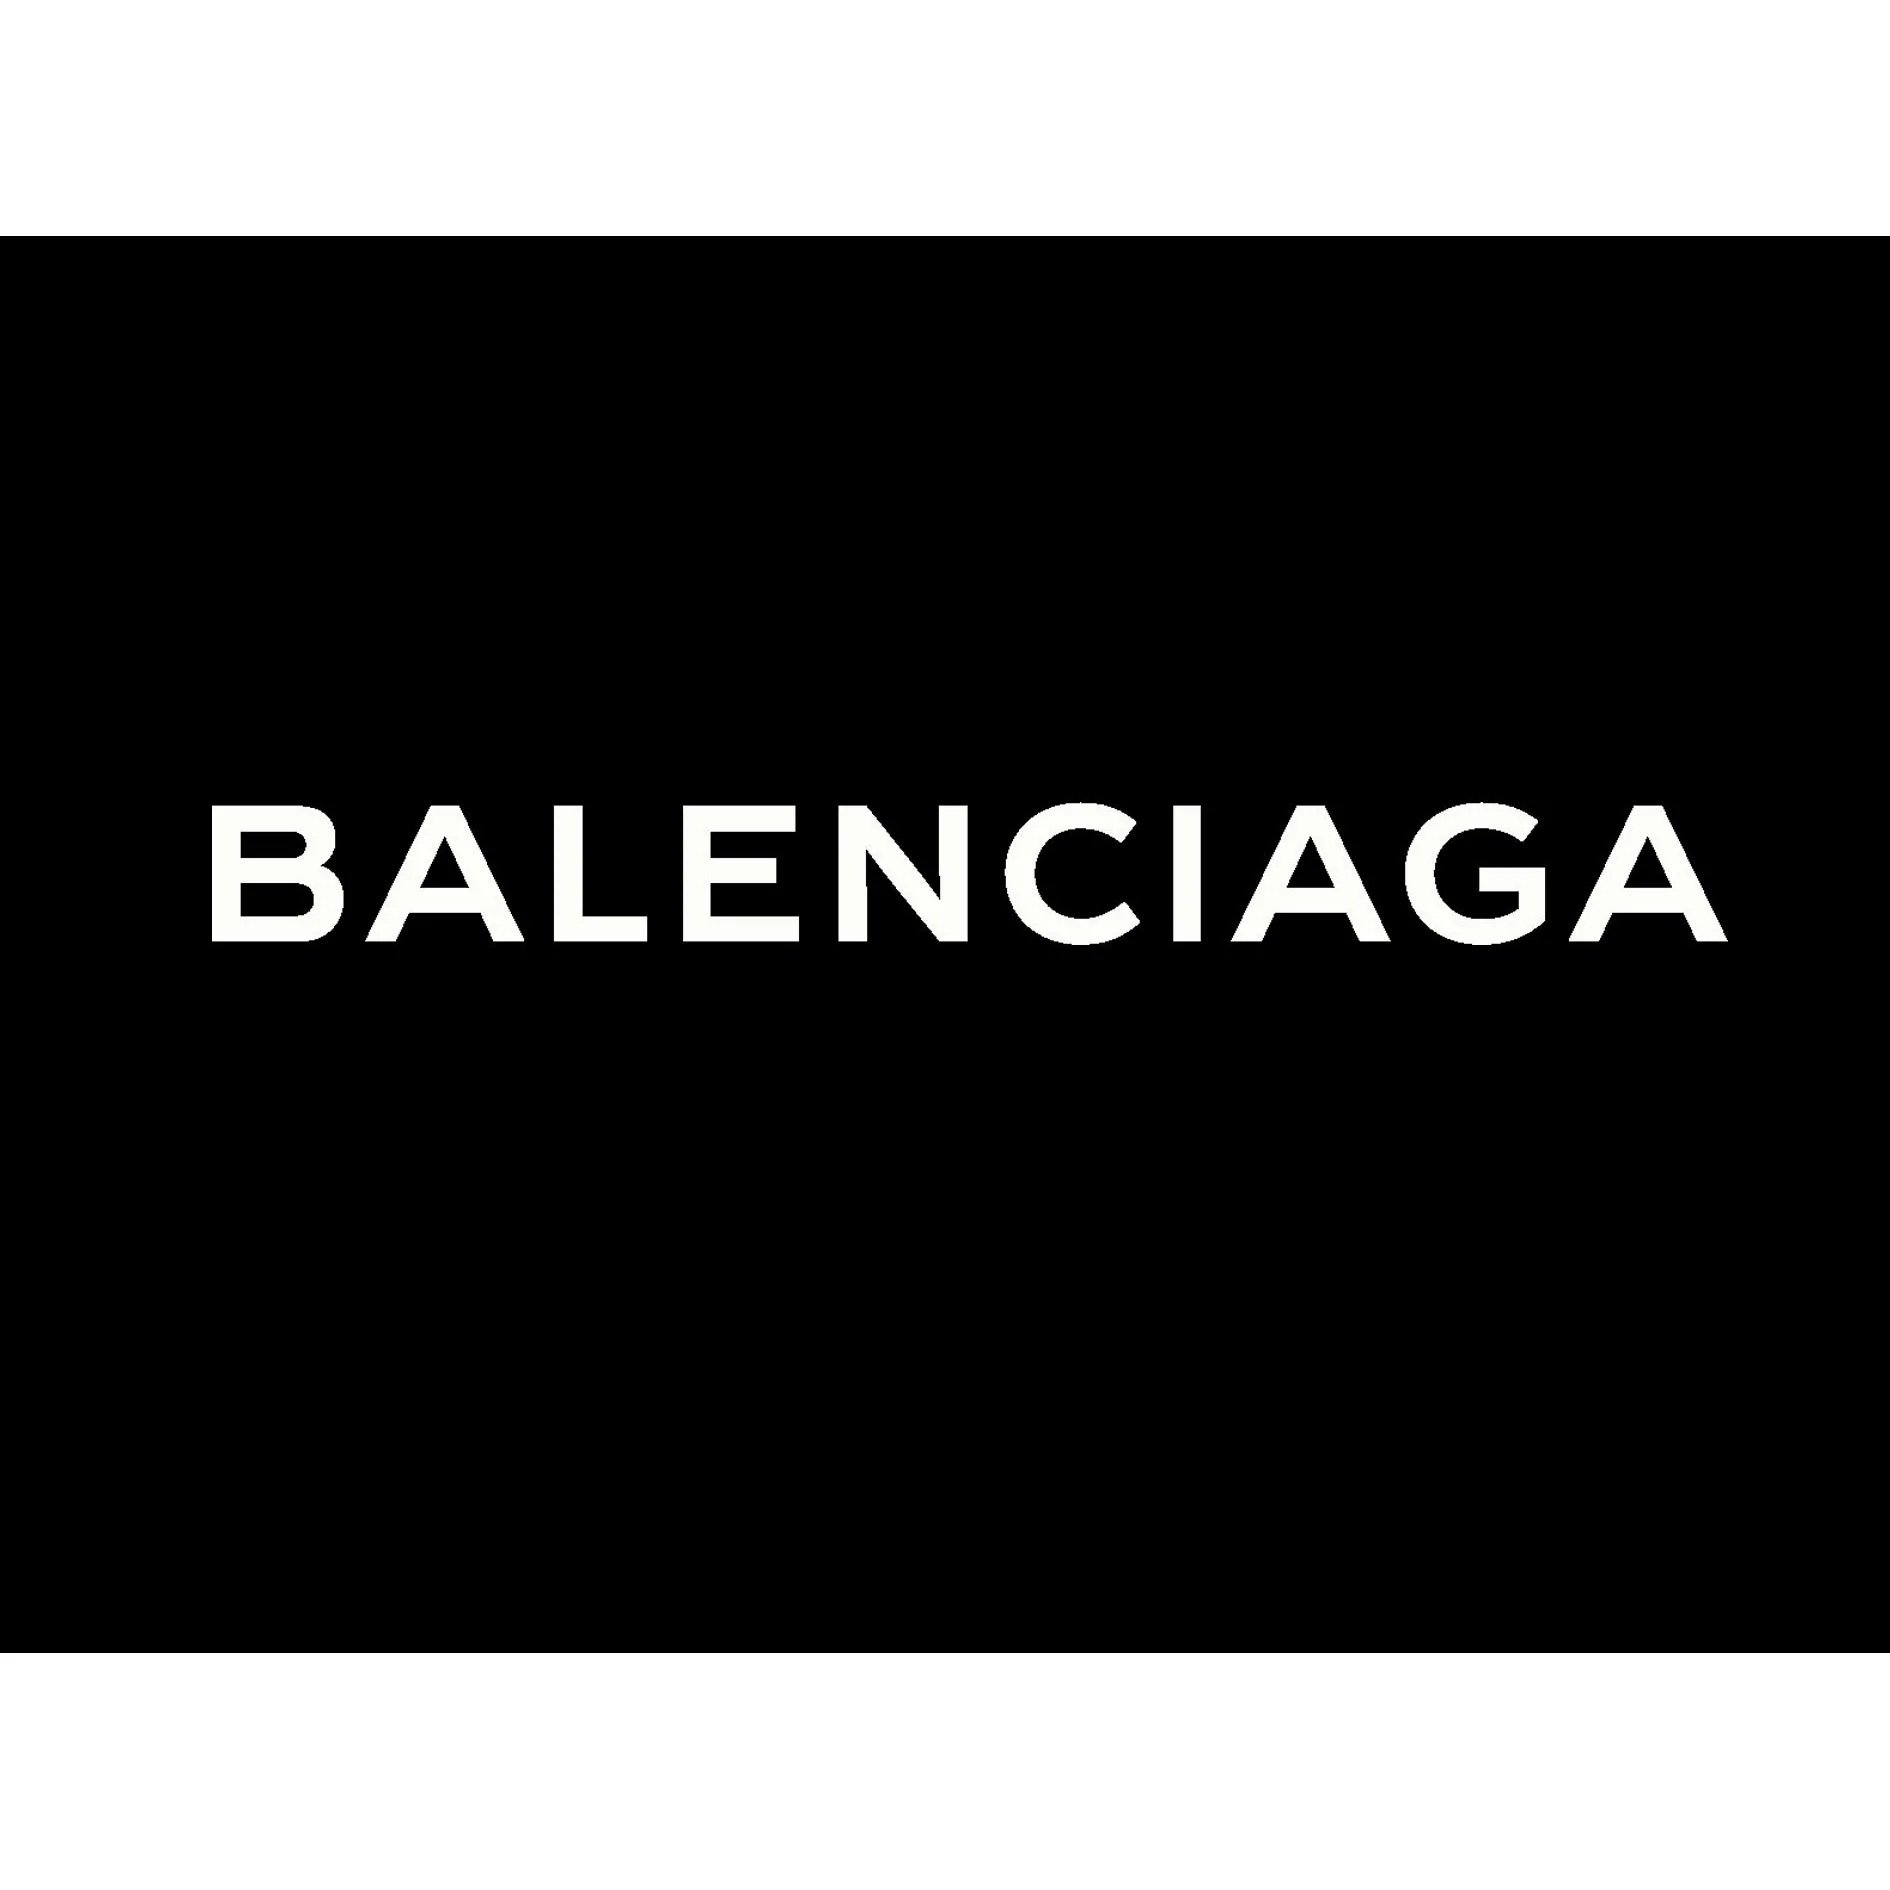 Balenciaga's creative director apologizes for 'wrong artistic